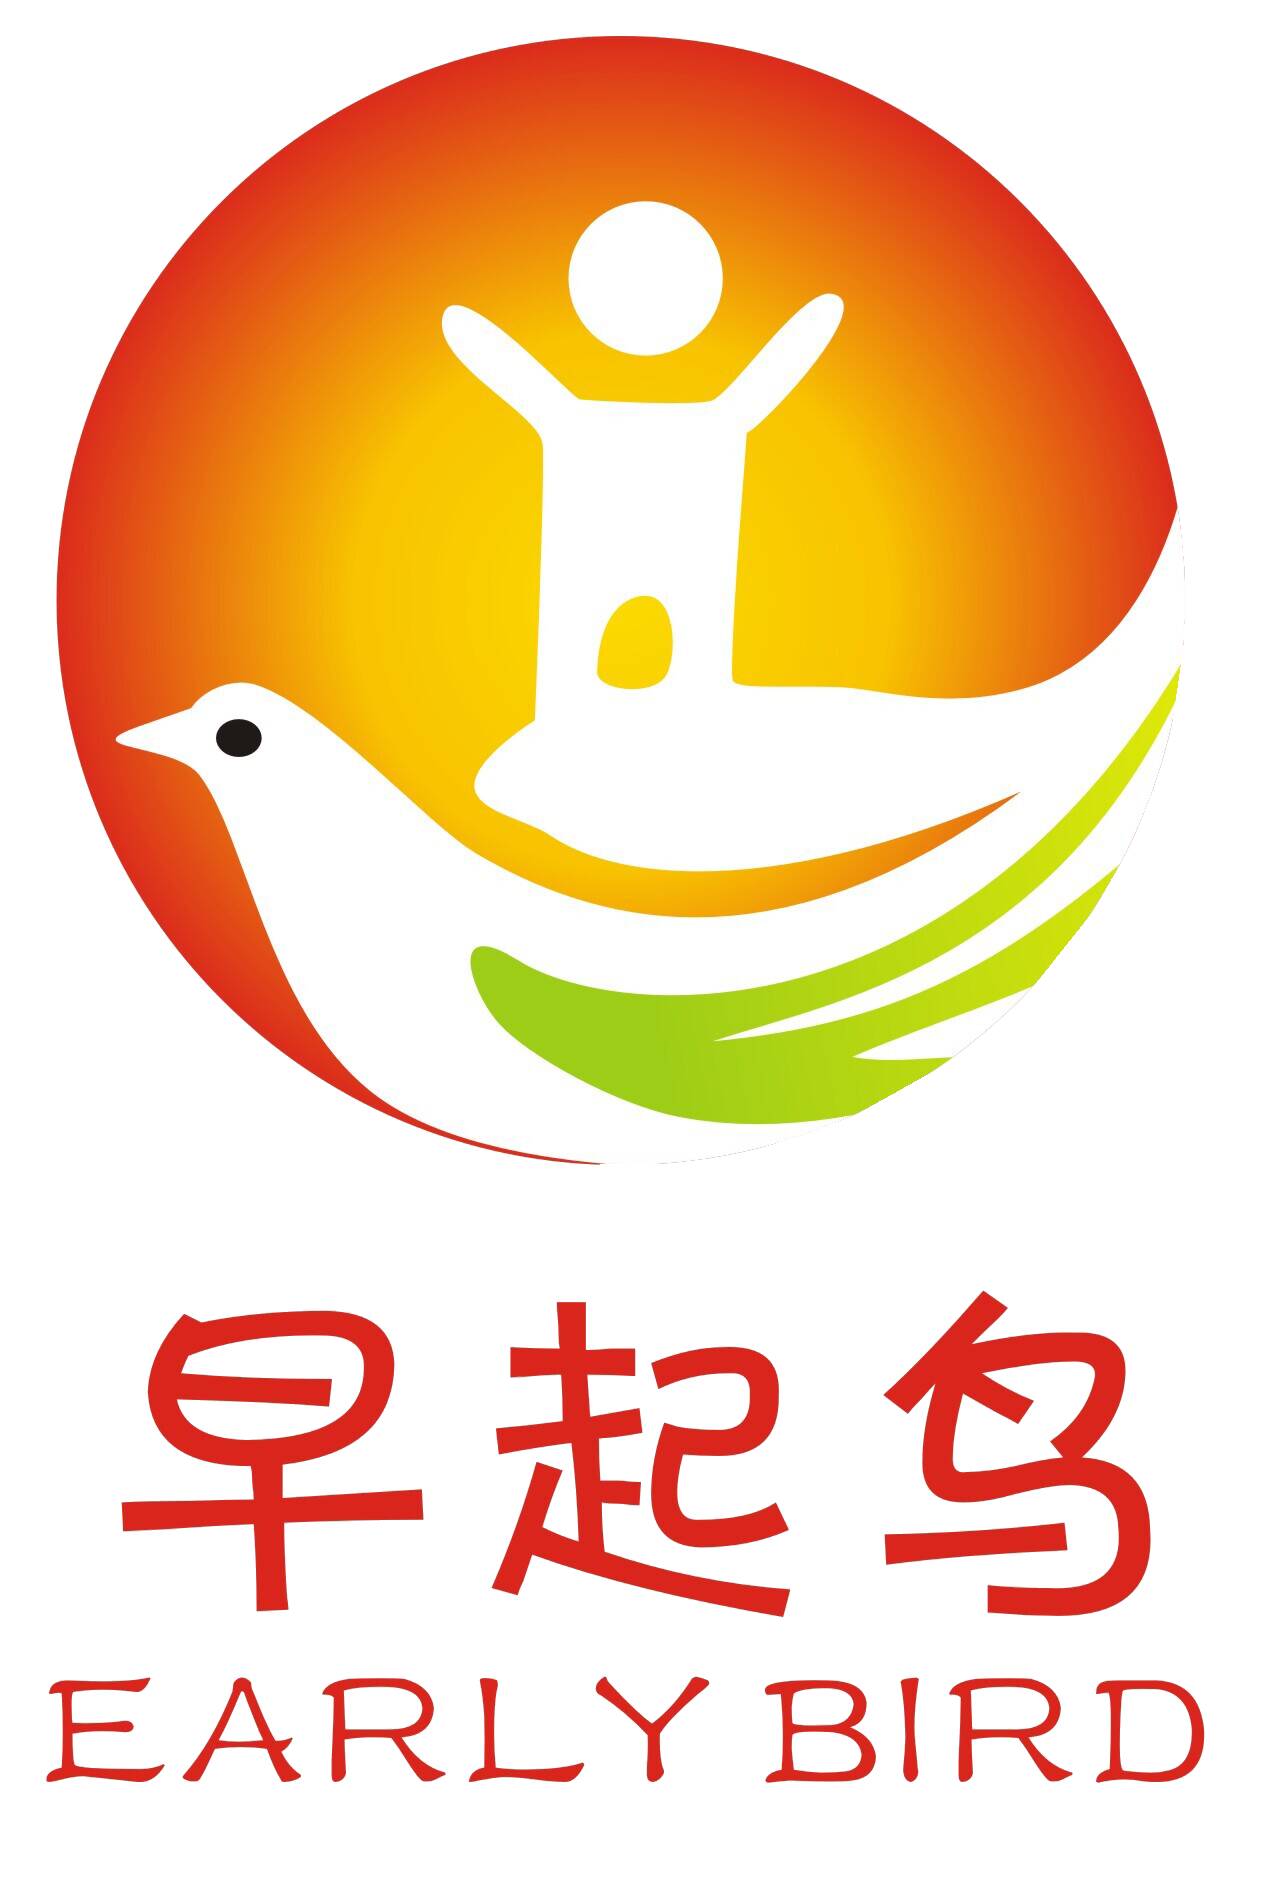 上海早起鸟康复中心logo图片